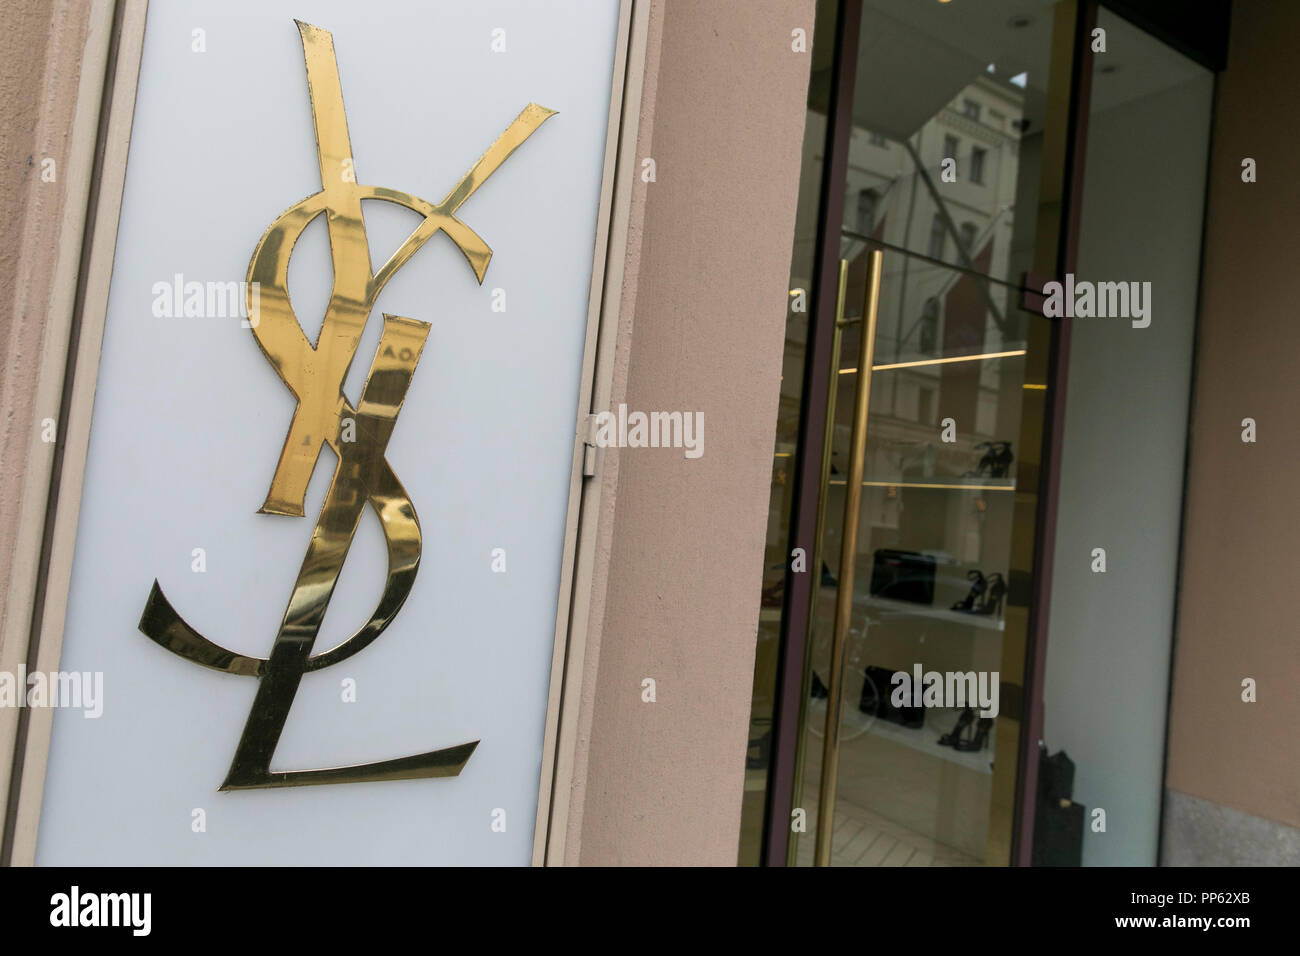 Un logo segno esterno di una Yves Saint Laurent store a Monaco di Baviera, Germania, il 2 settembre 2018. Foto Stock